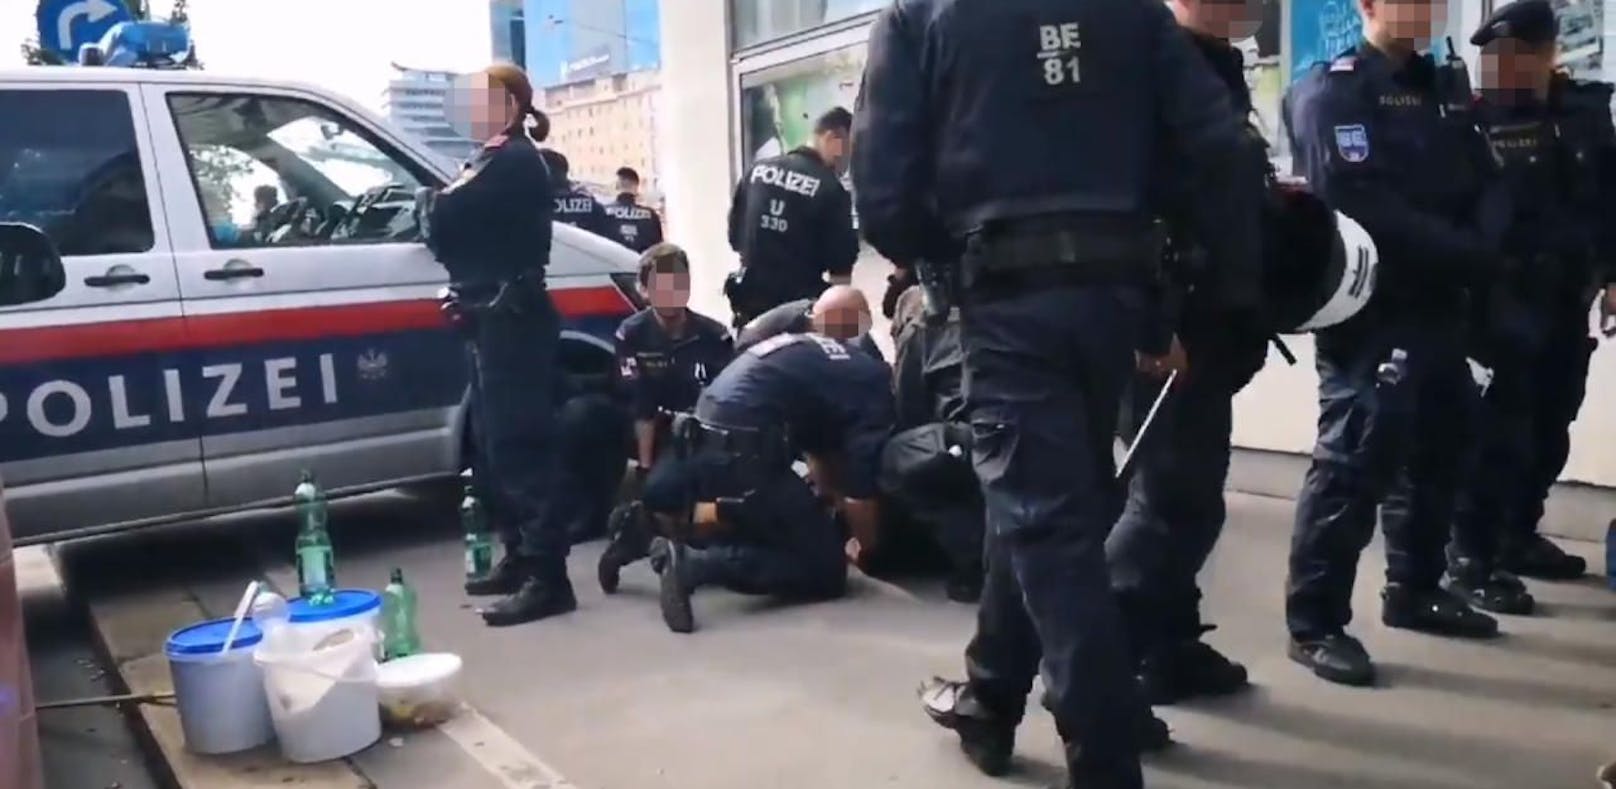 Am Rande einer Klima-Demo prügelte ein Polizist auf einen am Boden fixierten Mann ein.